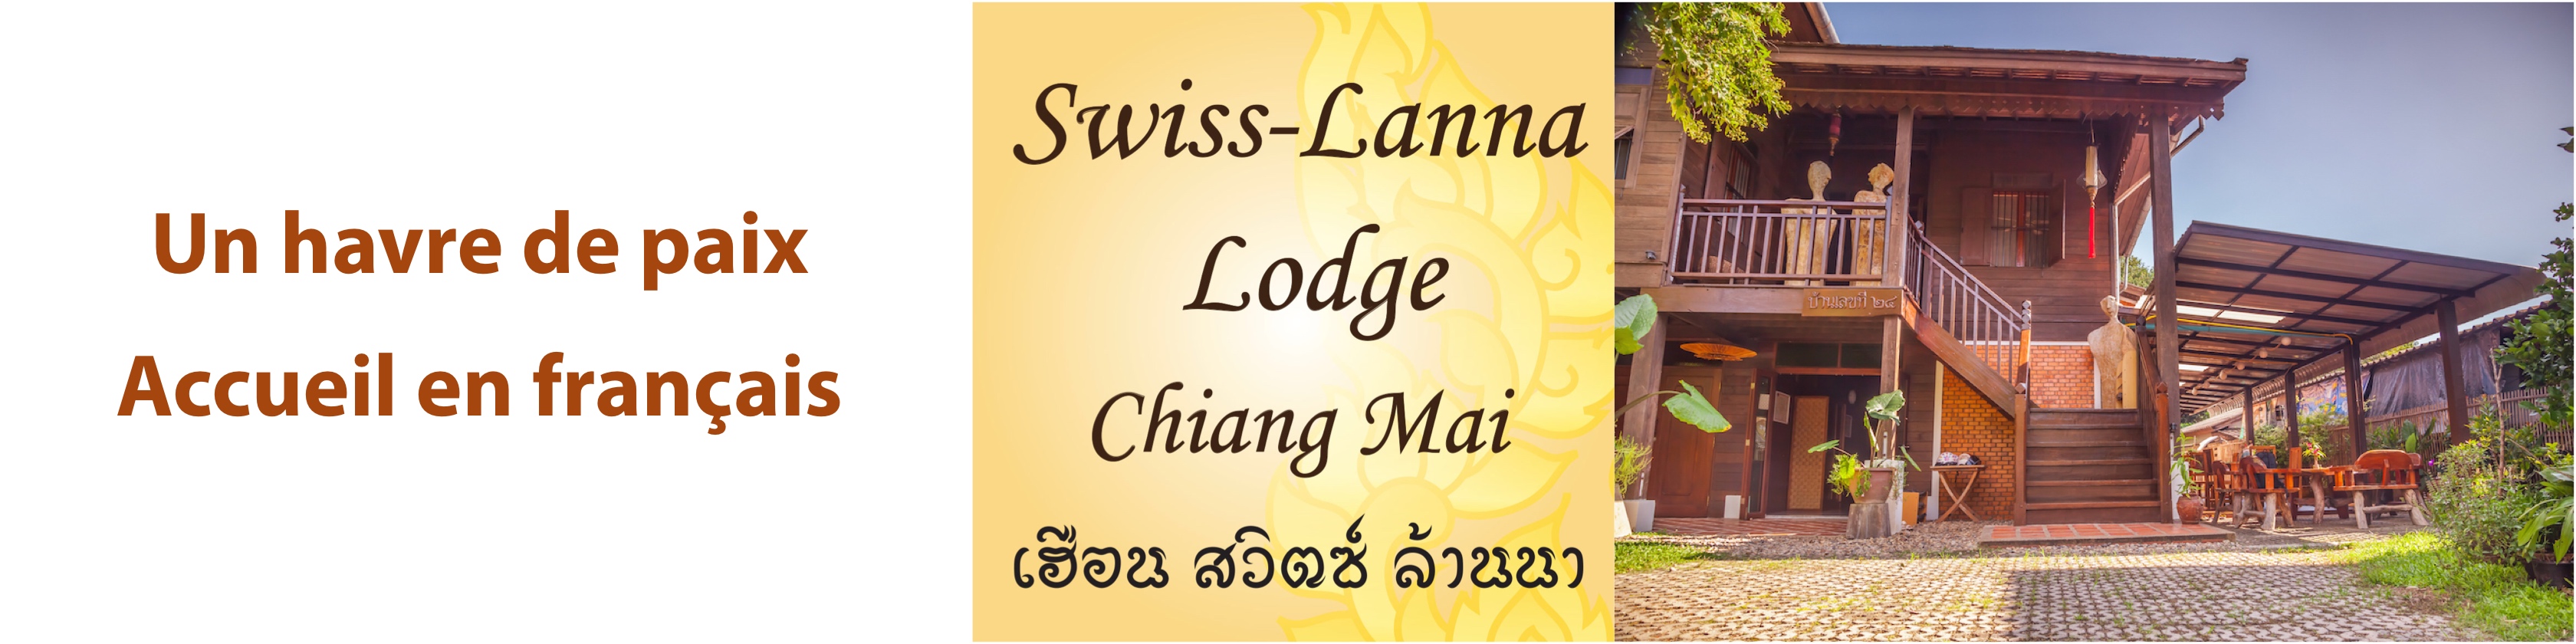 Swiss-Lanna Lodge Chiang Mai